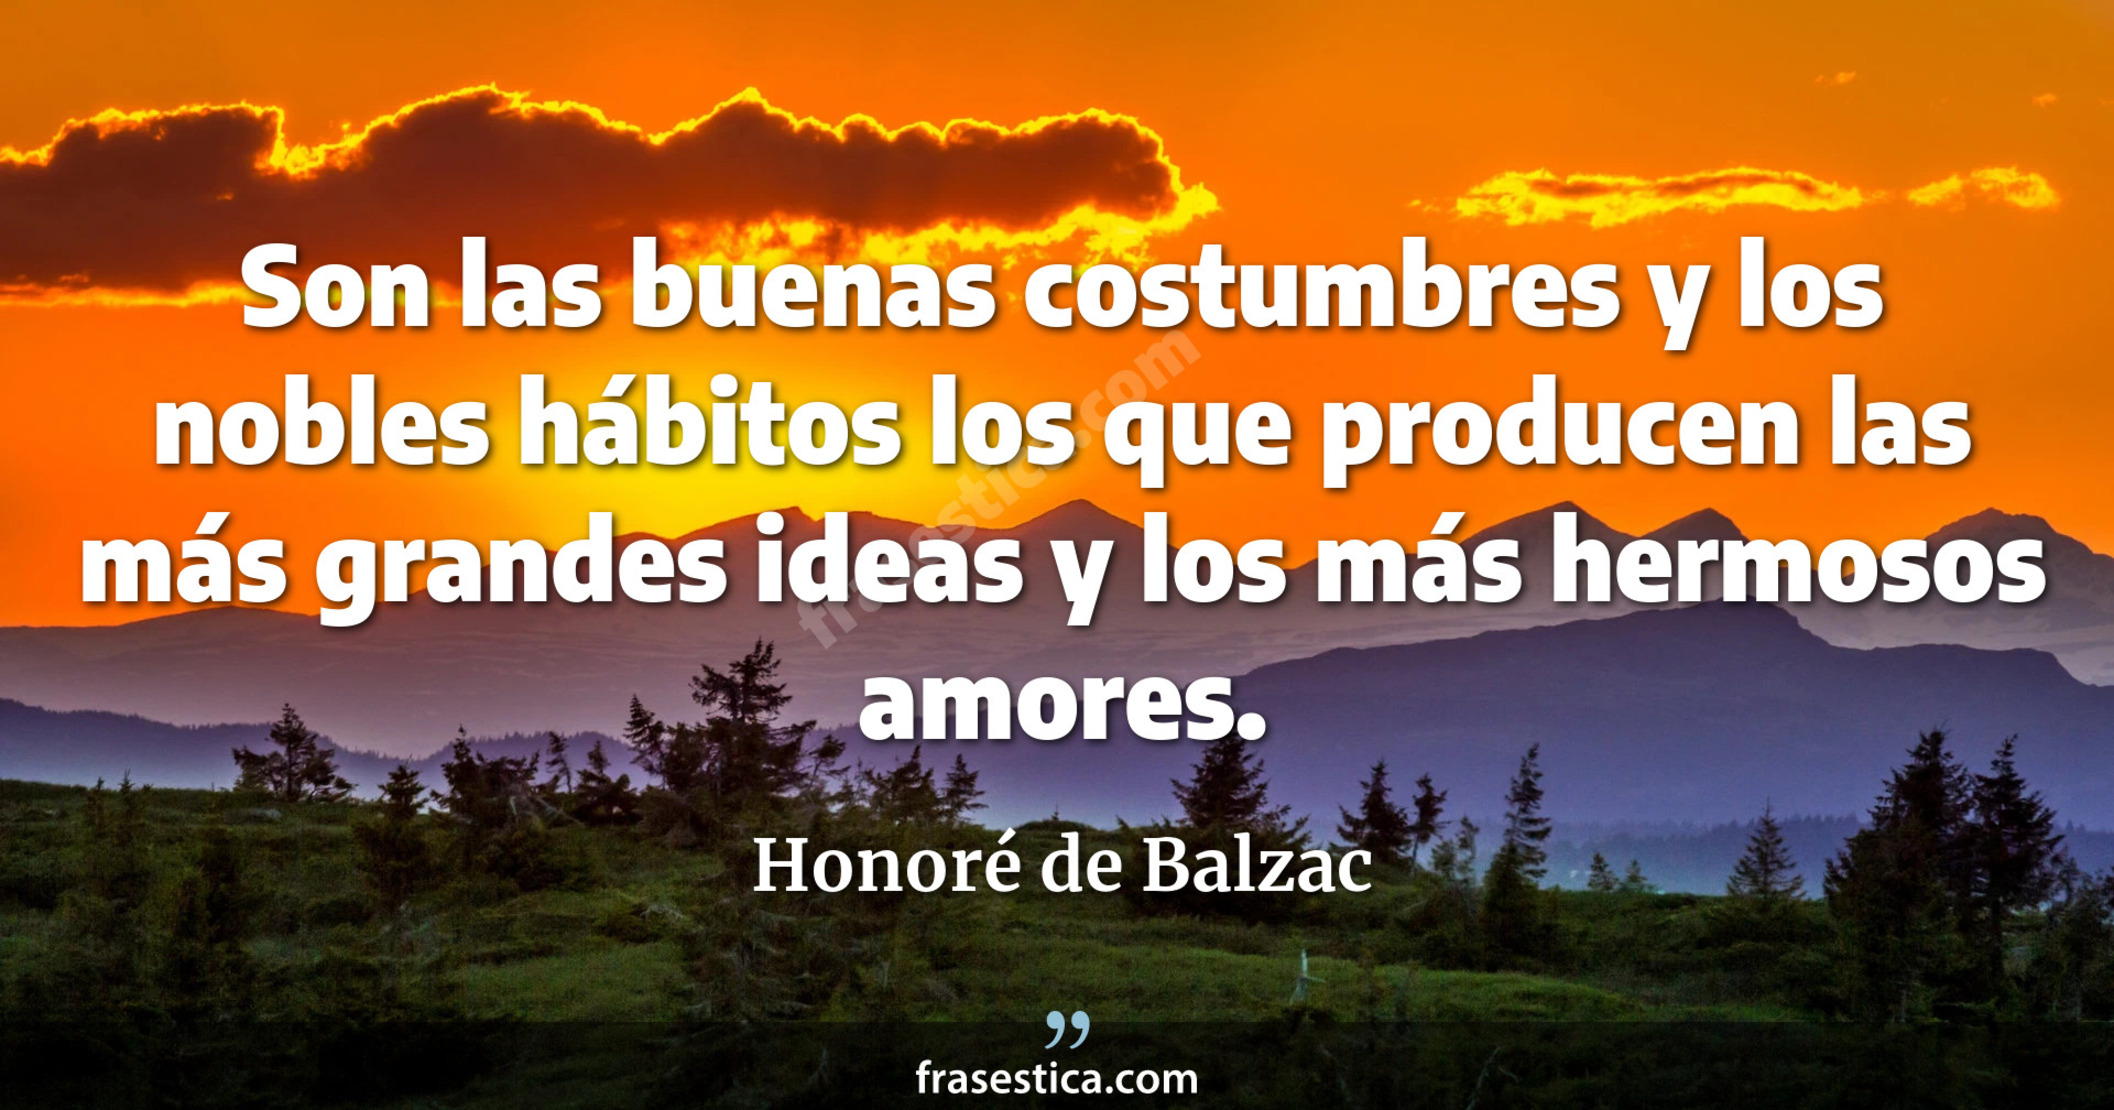 Son las buenas costumbres y los nobles hábitos los que producen las más grandes ideas y los más hermosos amores. - Honoré de Balzac